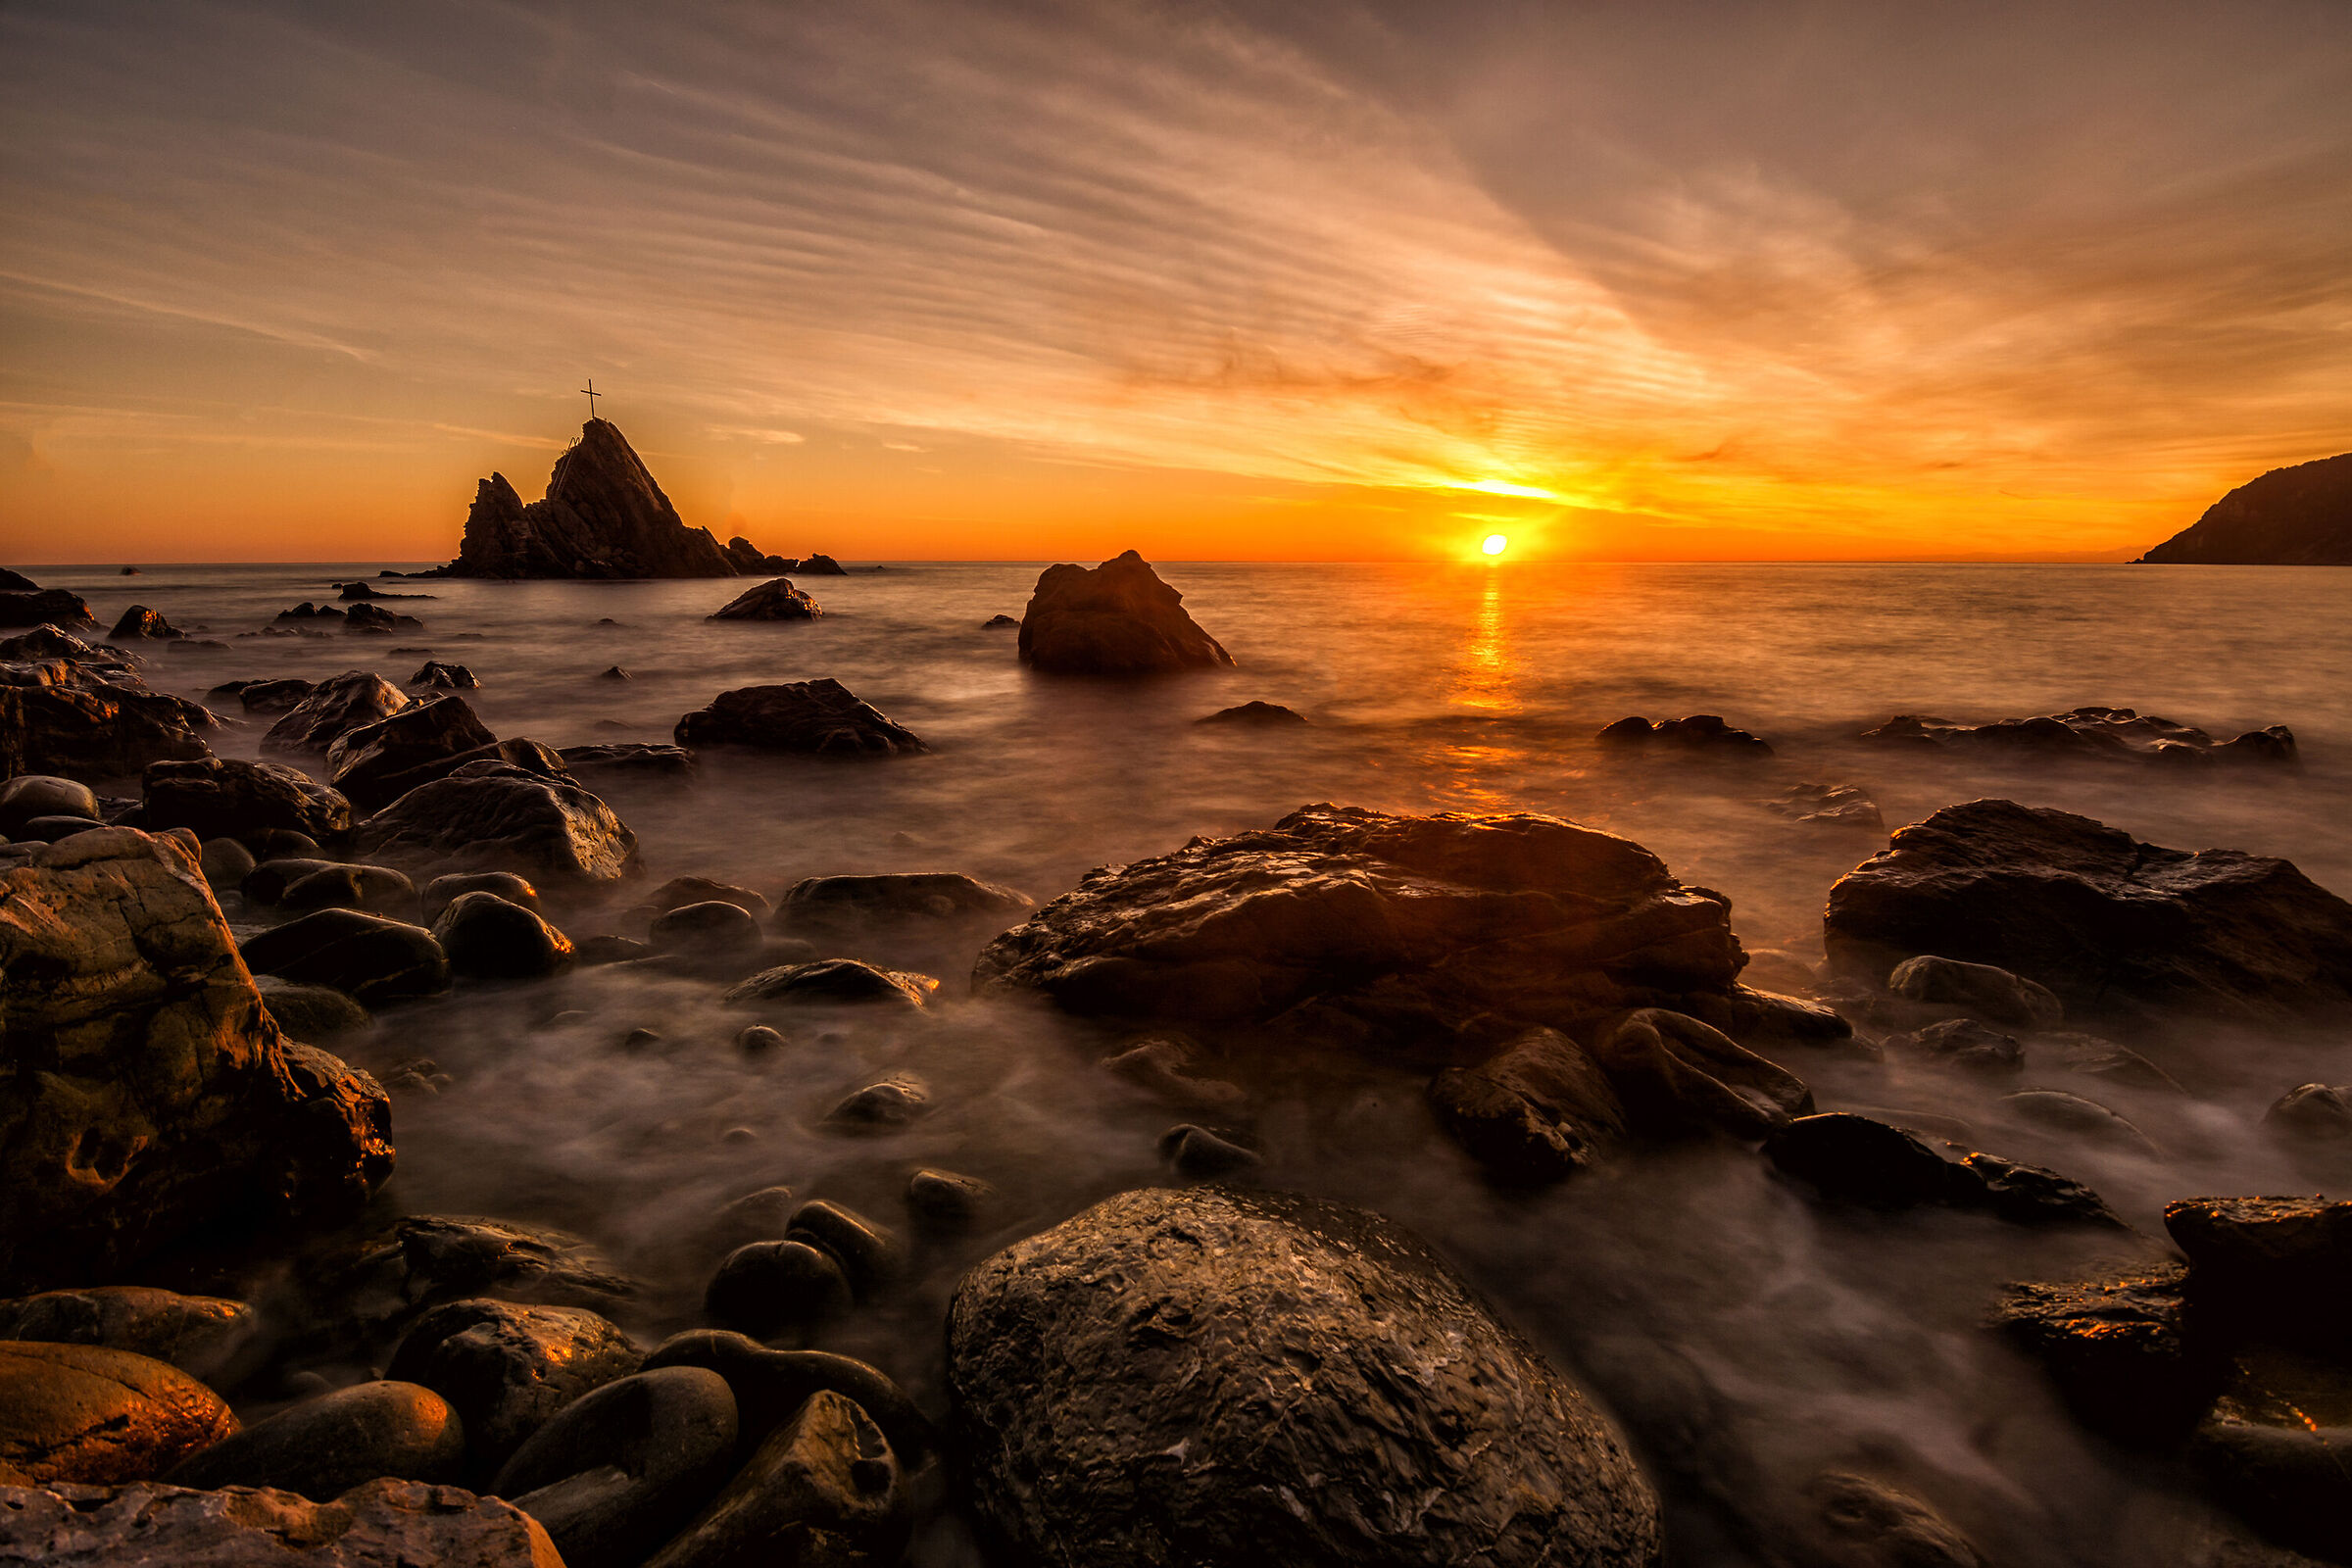 A sunset among the rocks...